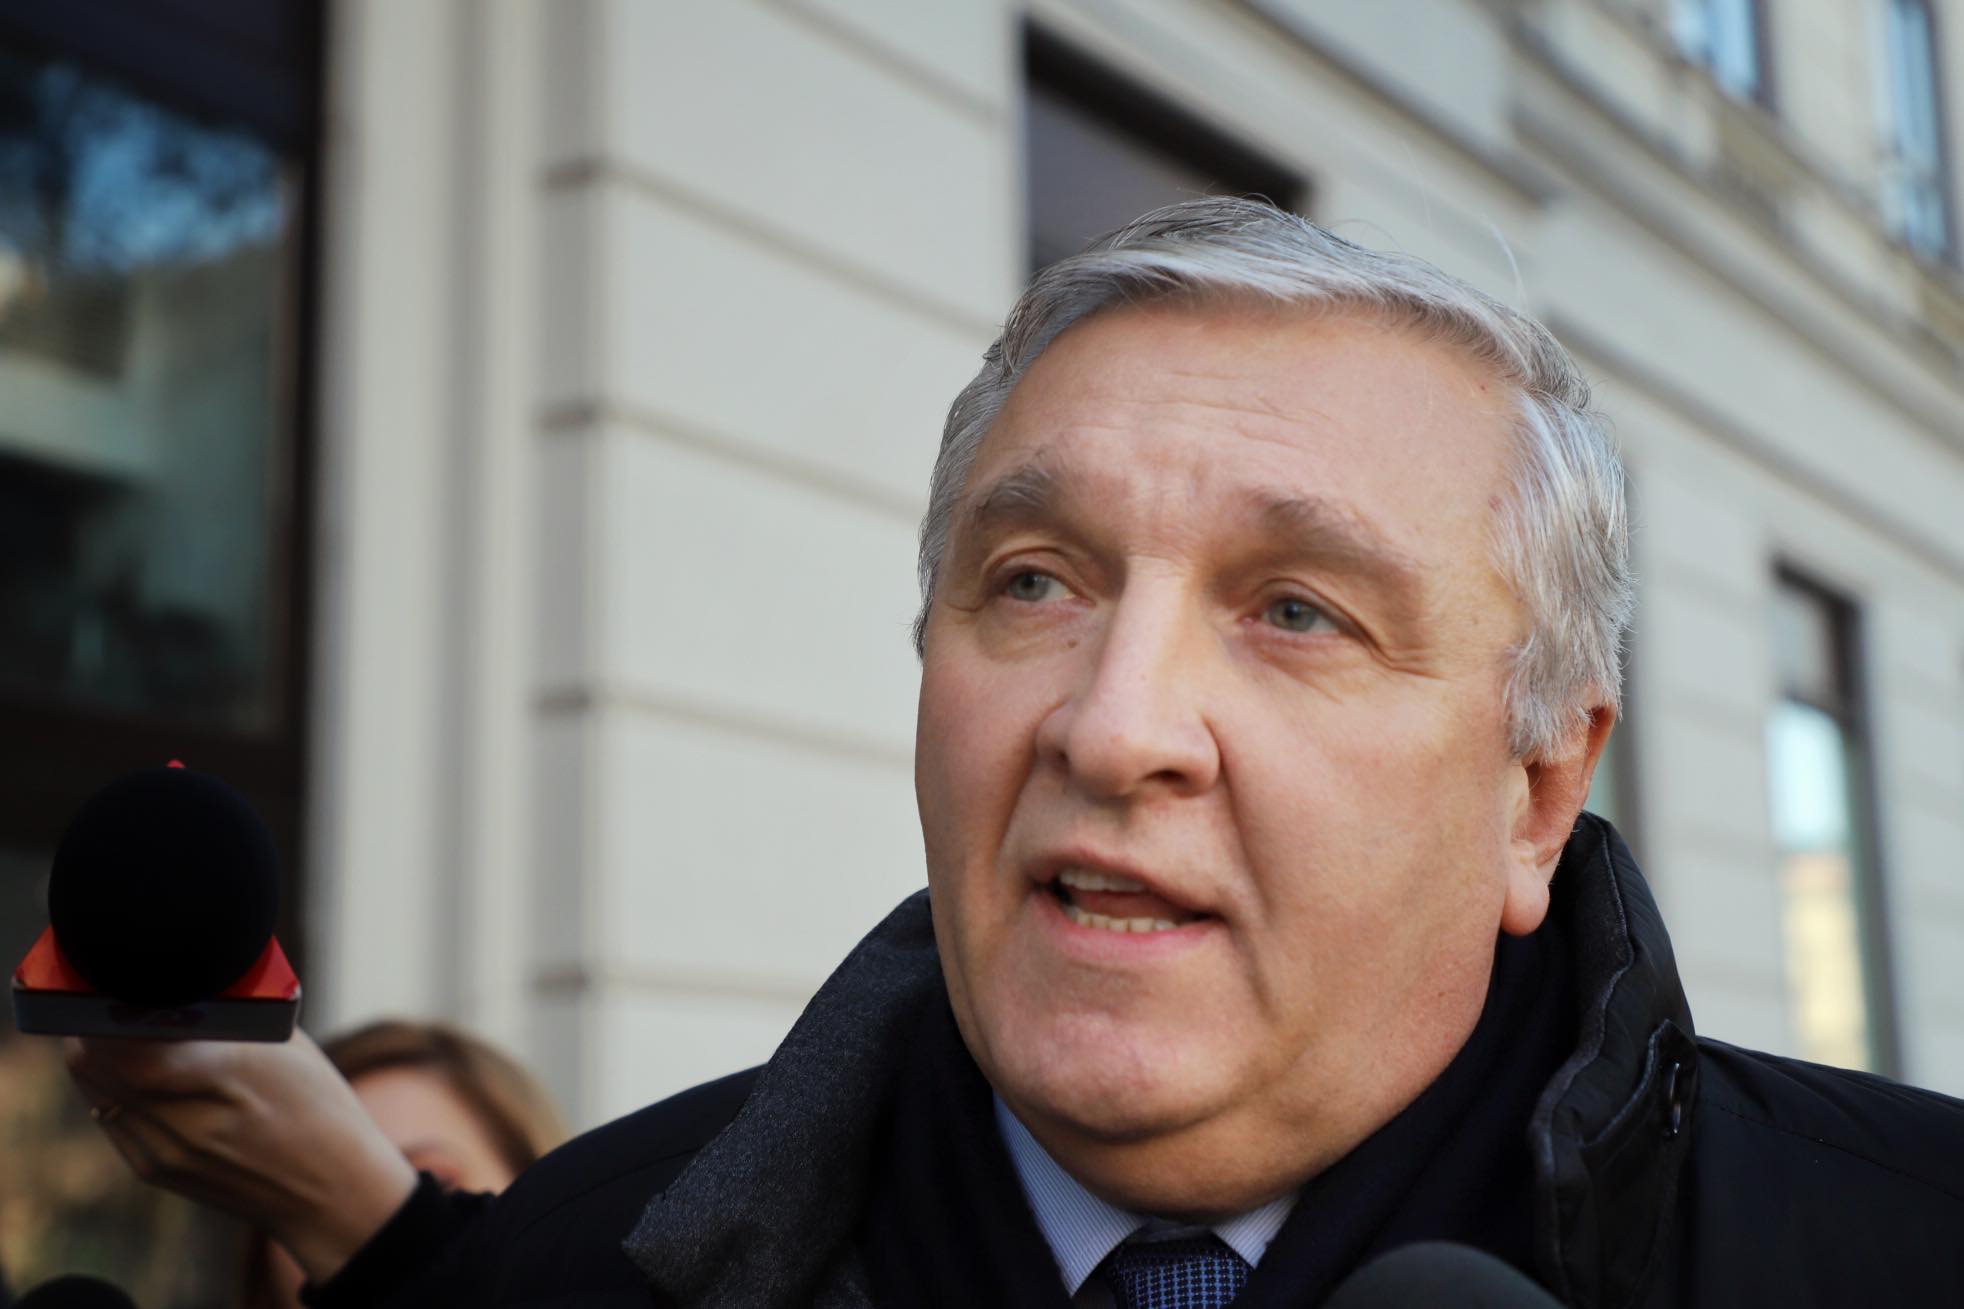 Fostul ministru al Sănătăţii, Mircea Beuran, a obţinut în instanţă anularea concedierii de la Spitalul Floreasca